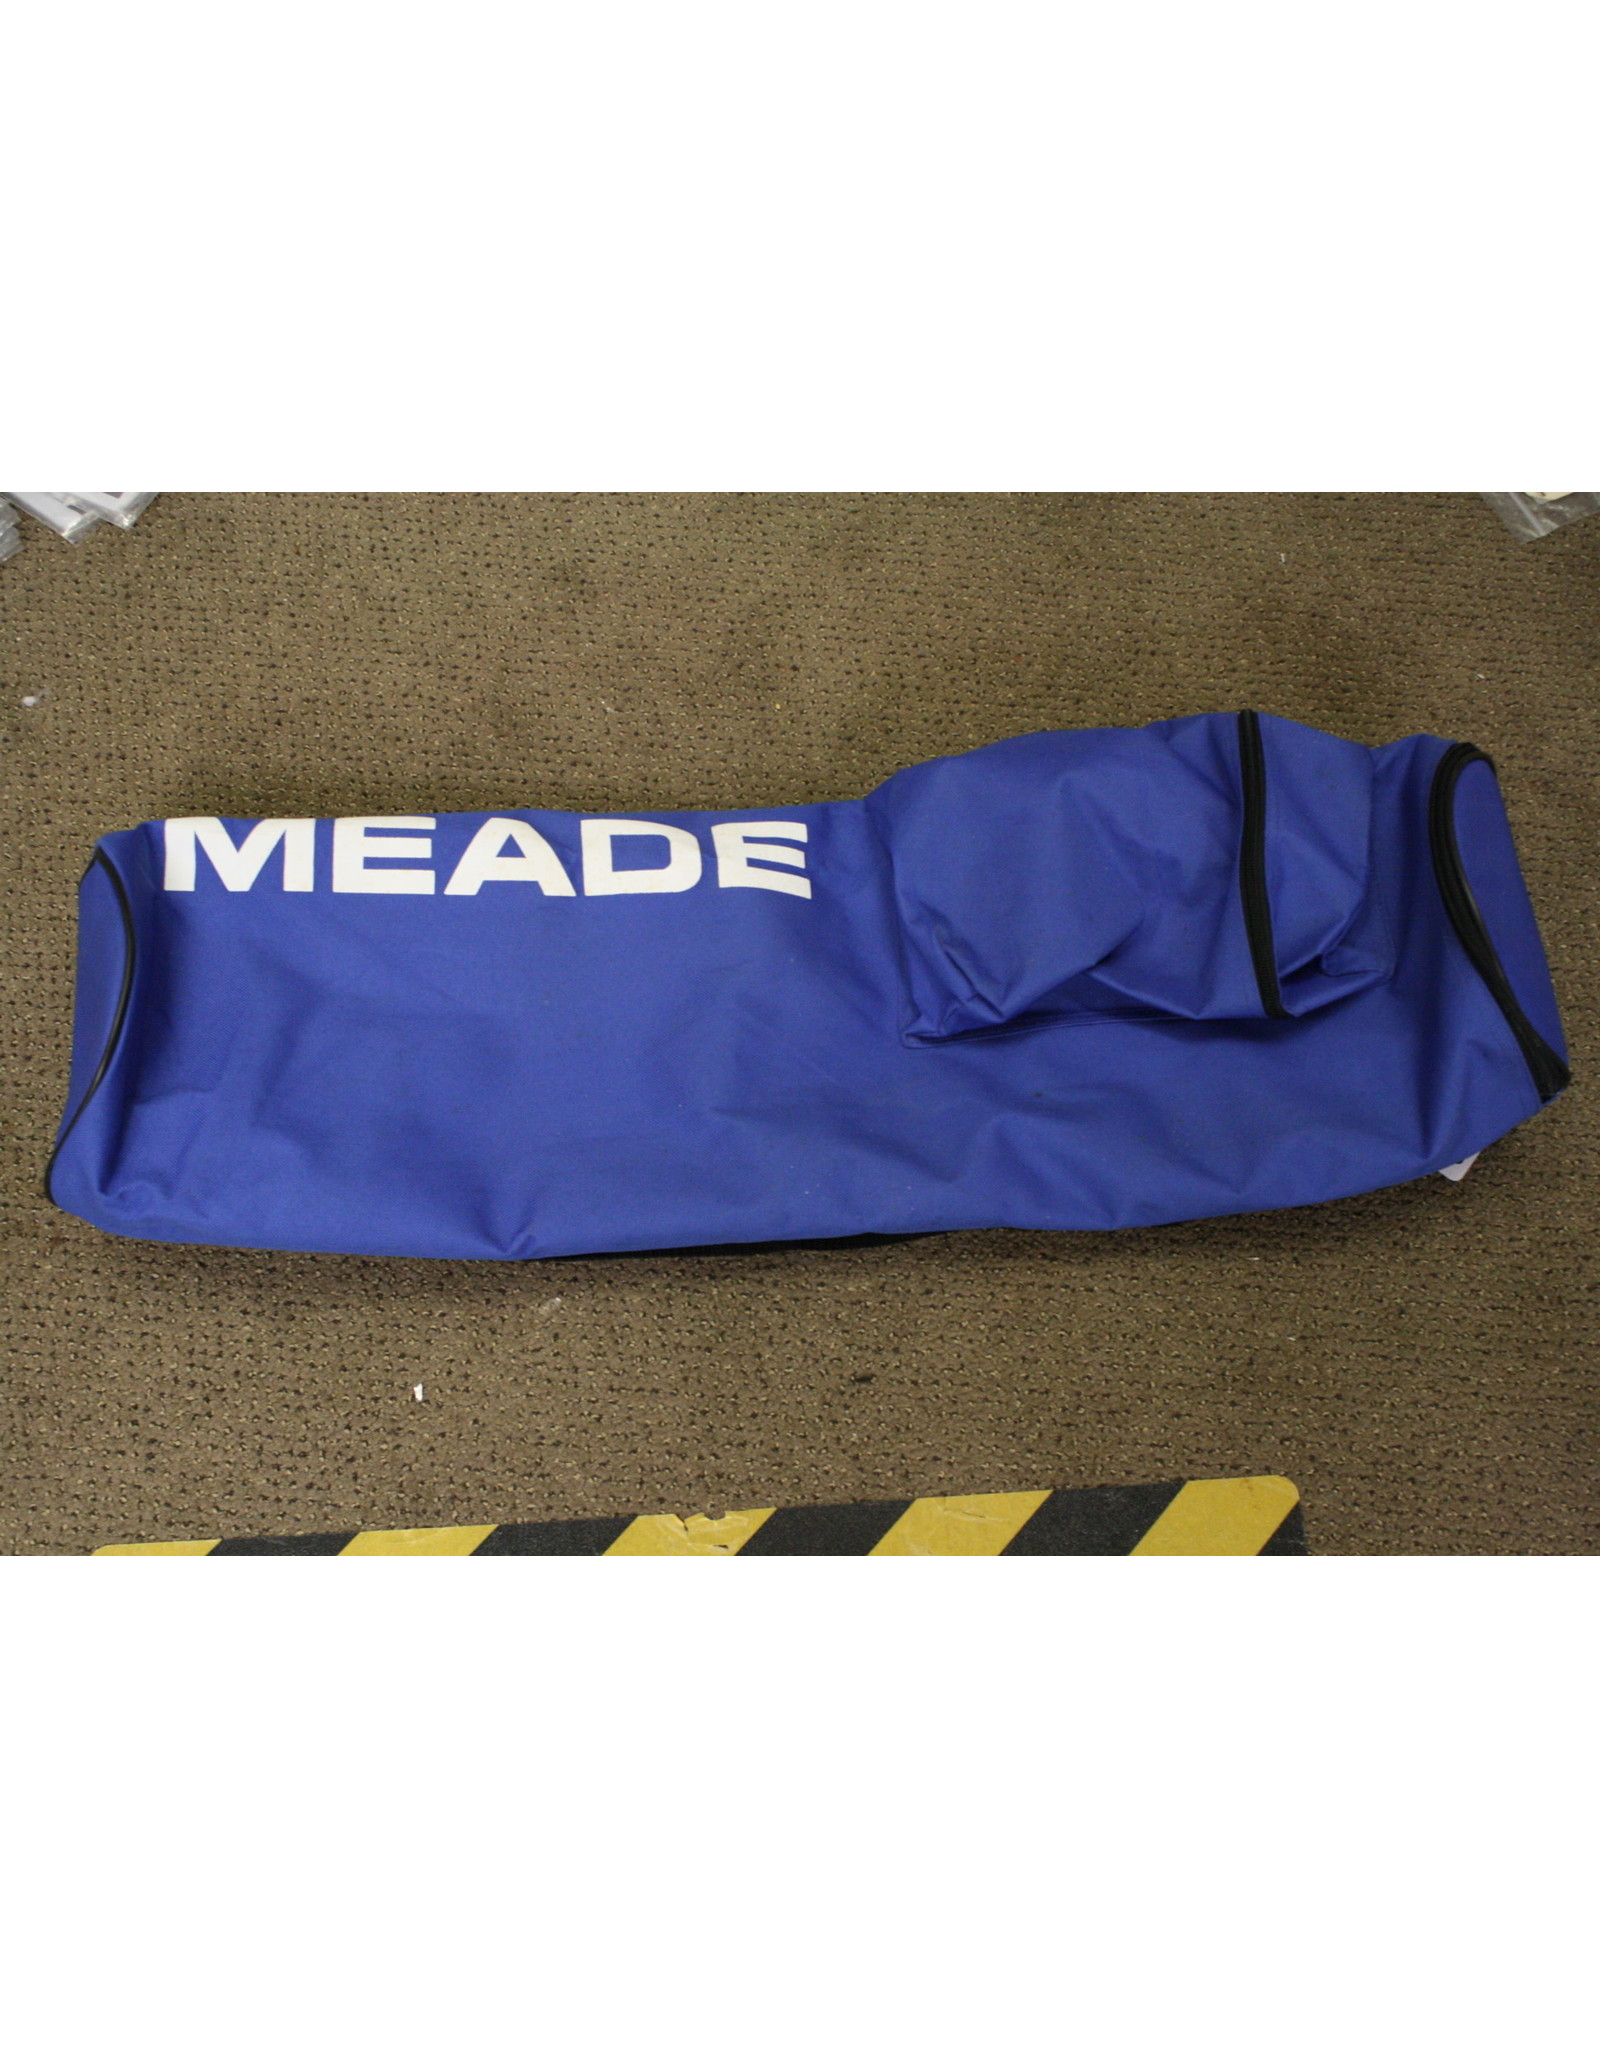 Meade Meade Telescope Bag - 30x7x7 inch